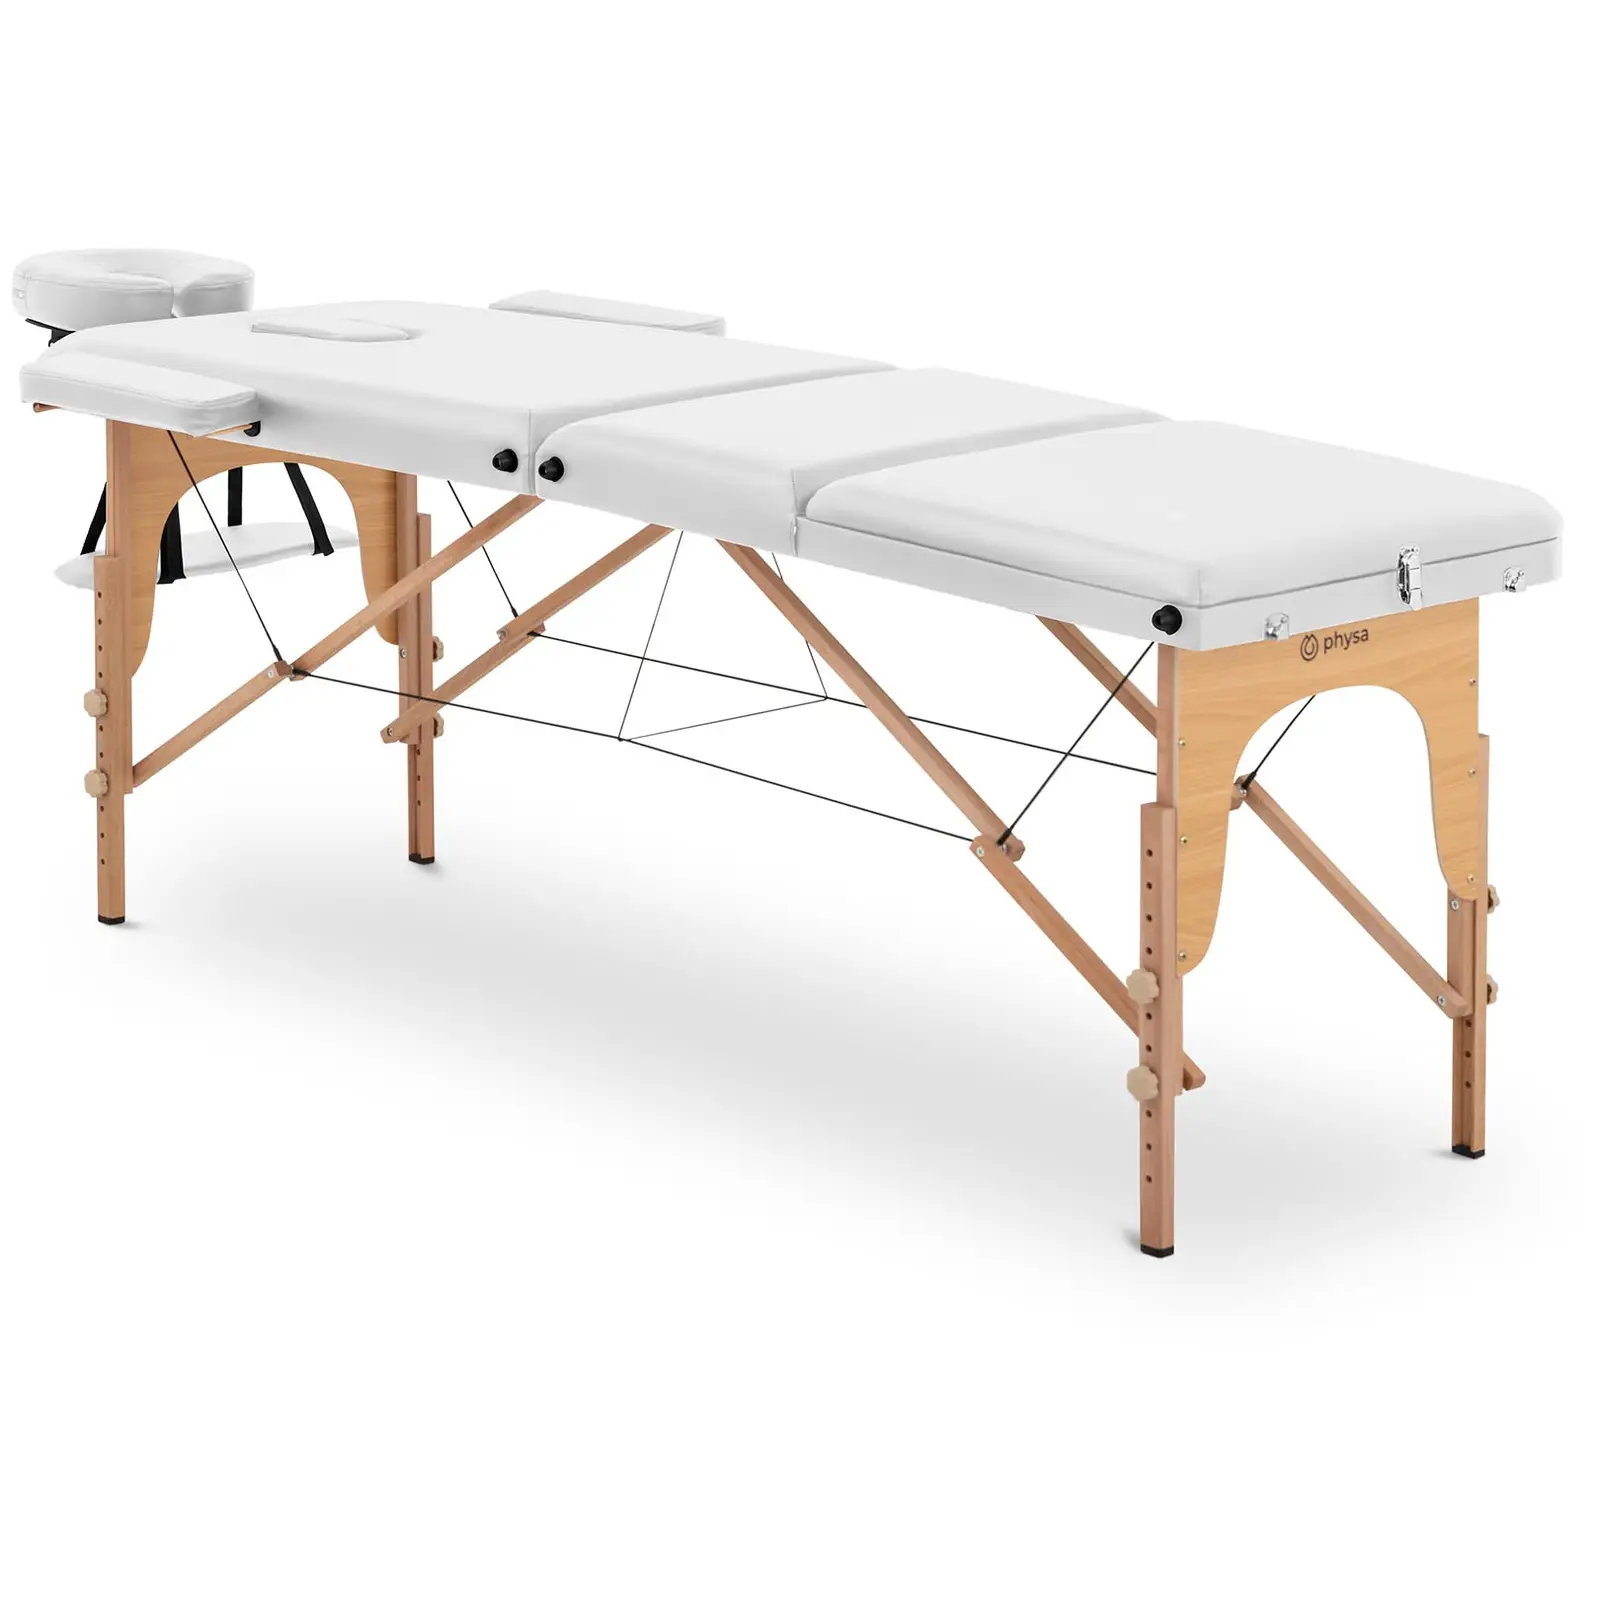 Сгъваема масажна маса - накланяща се подложка за крака - букова дървесина - изключително широка (70 см) - бяла